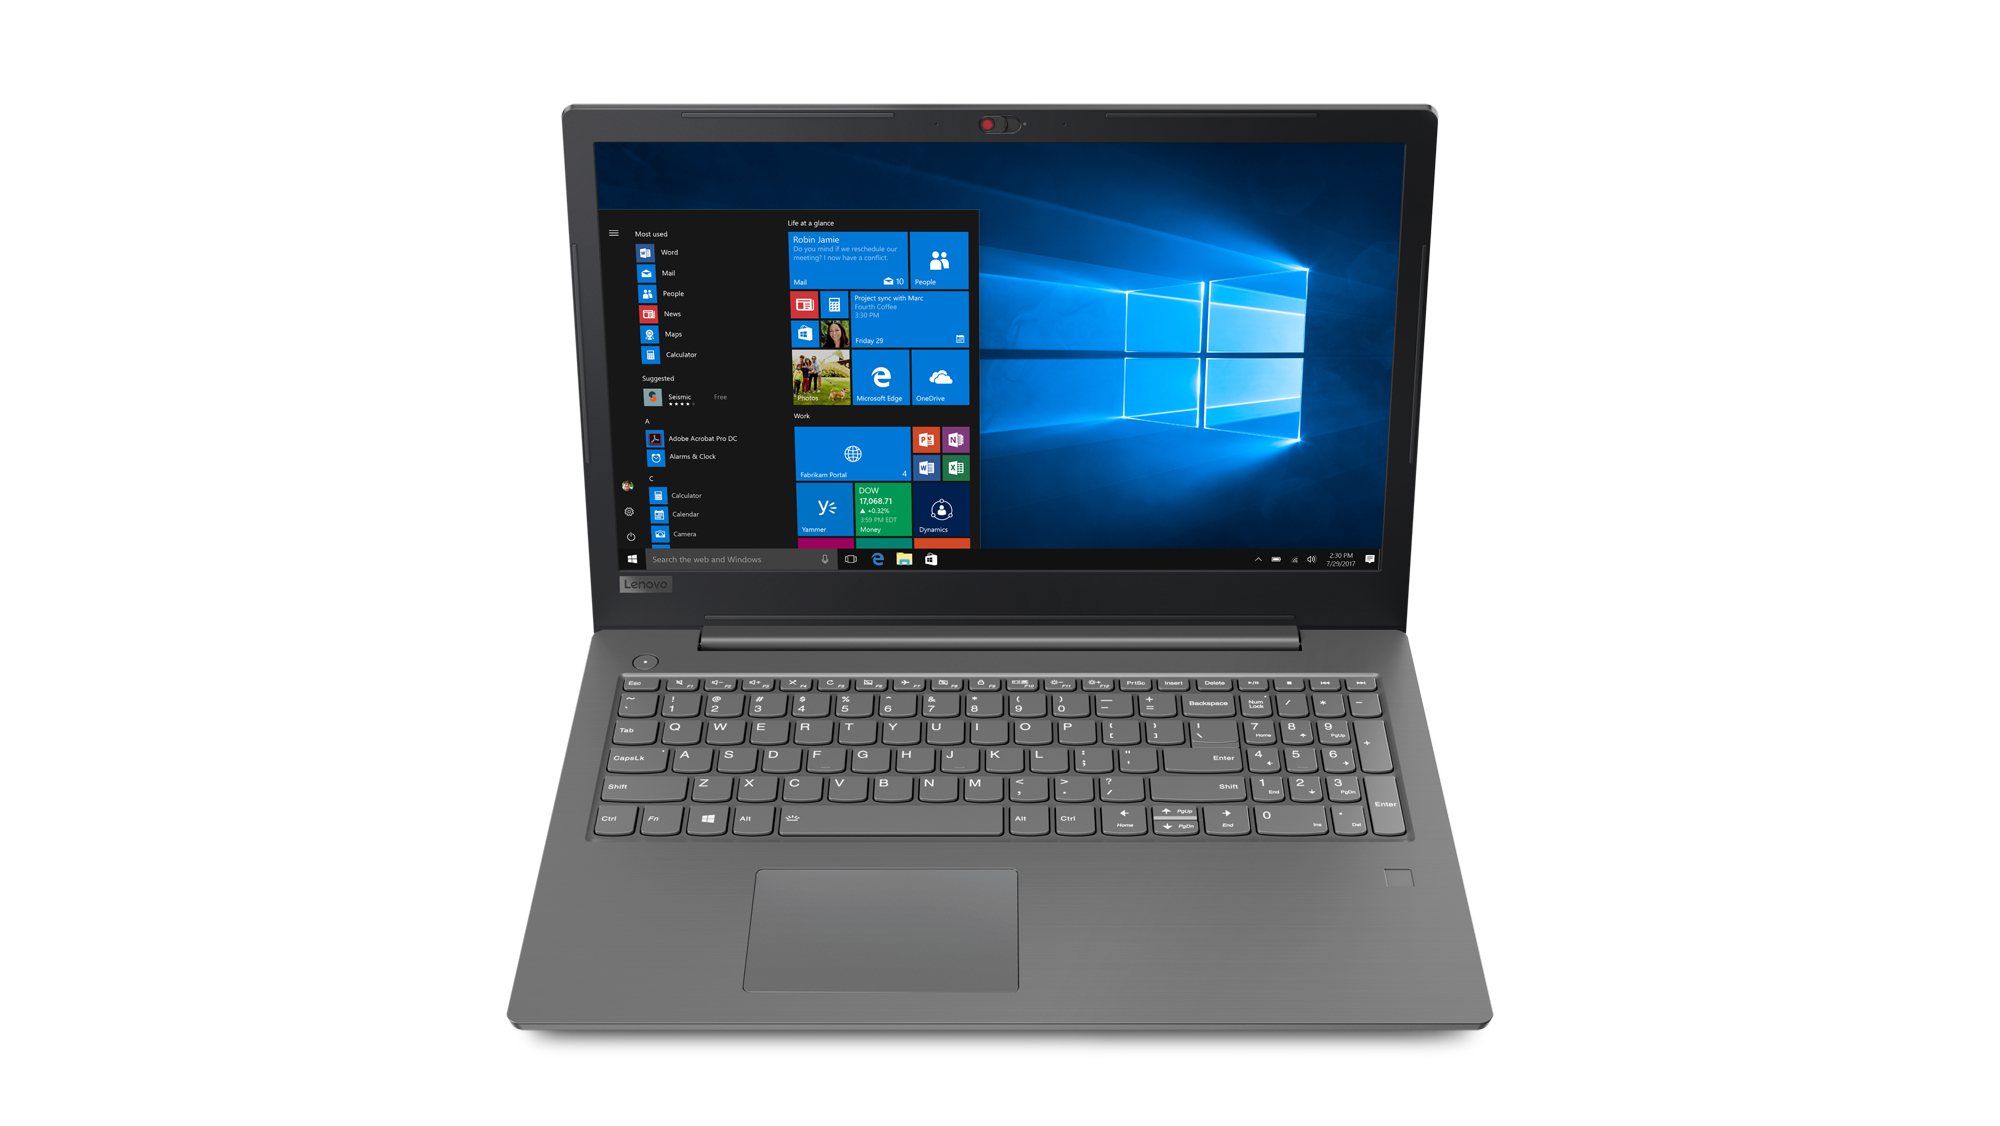 Laptop Lenovo V330 Core I7 8 Gb 1000 Gb 14" Windows 10 Pro 81B0003Jlm